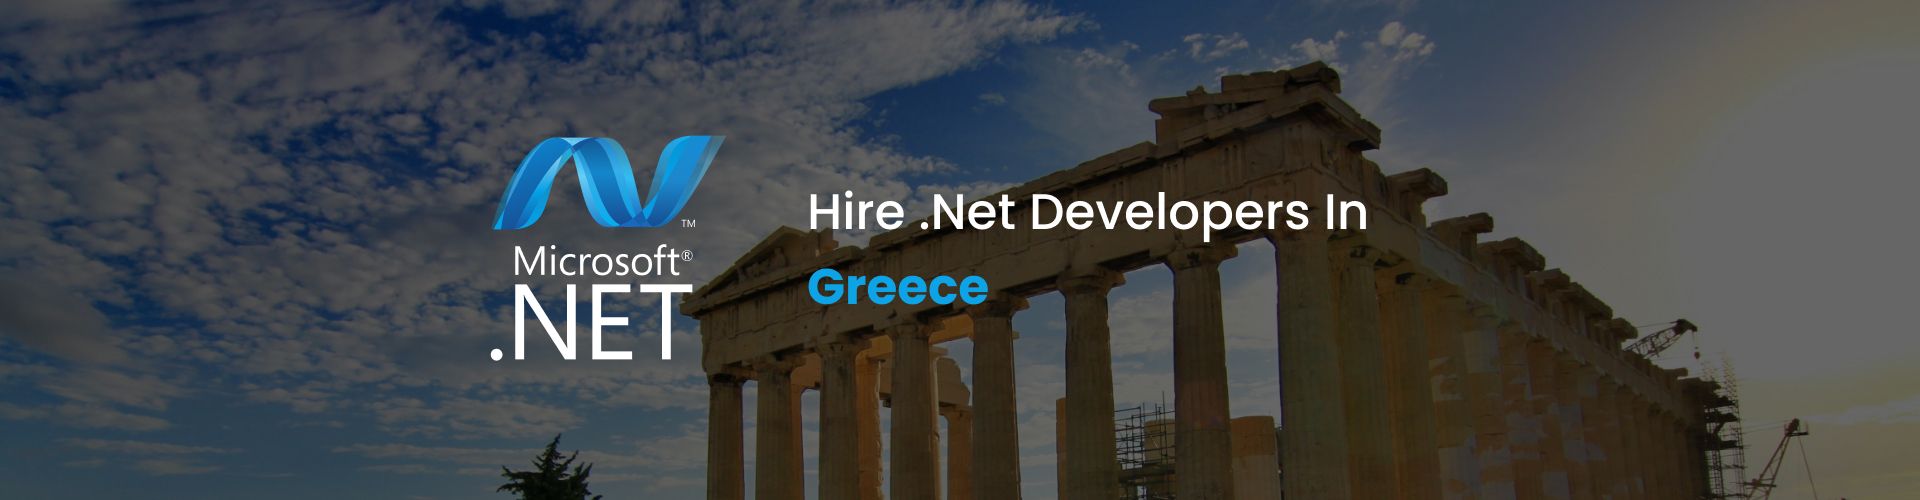 hire .net developers in greece